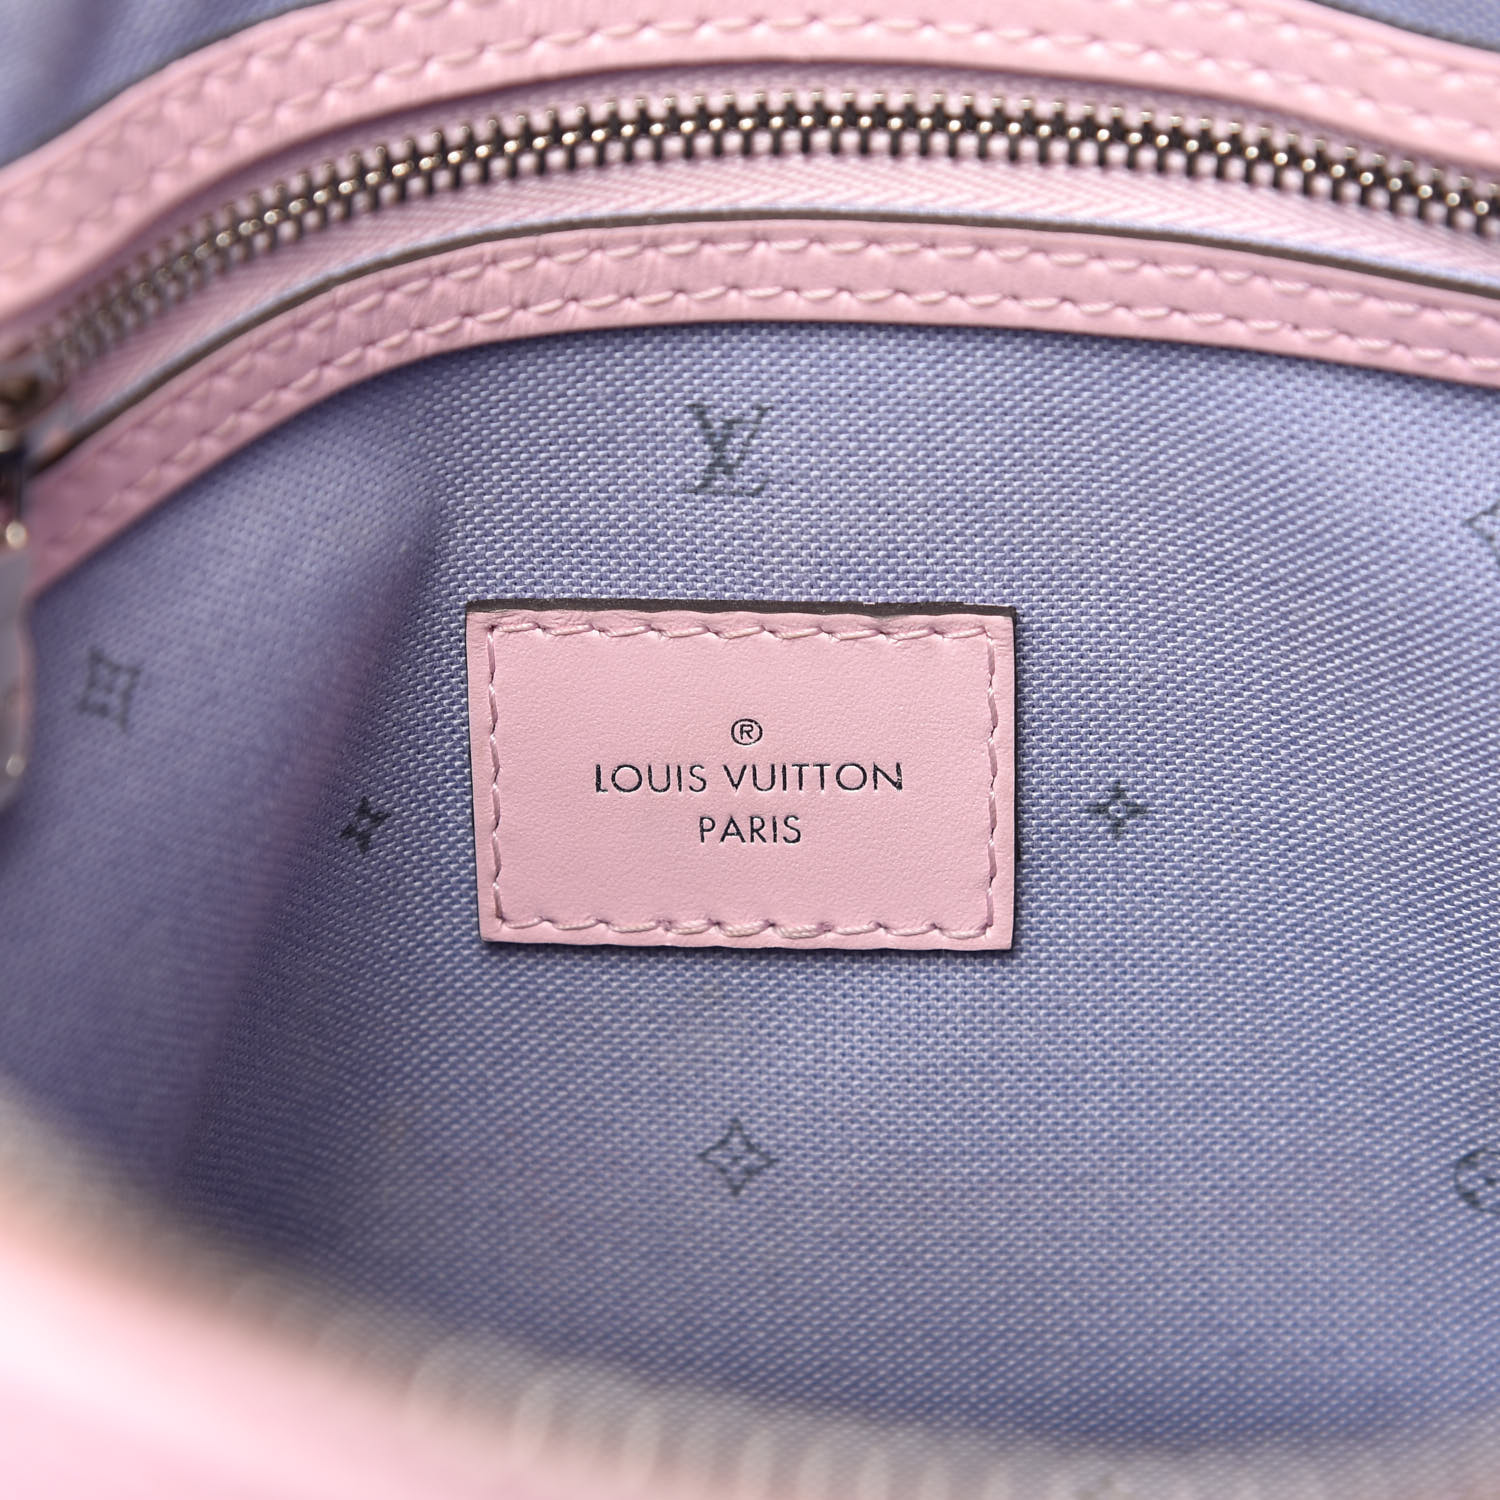 Louis Vuitton Pastel Bag Dhgate Login